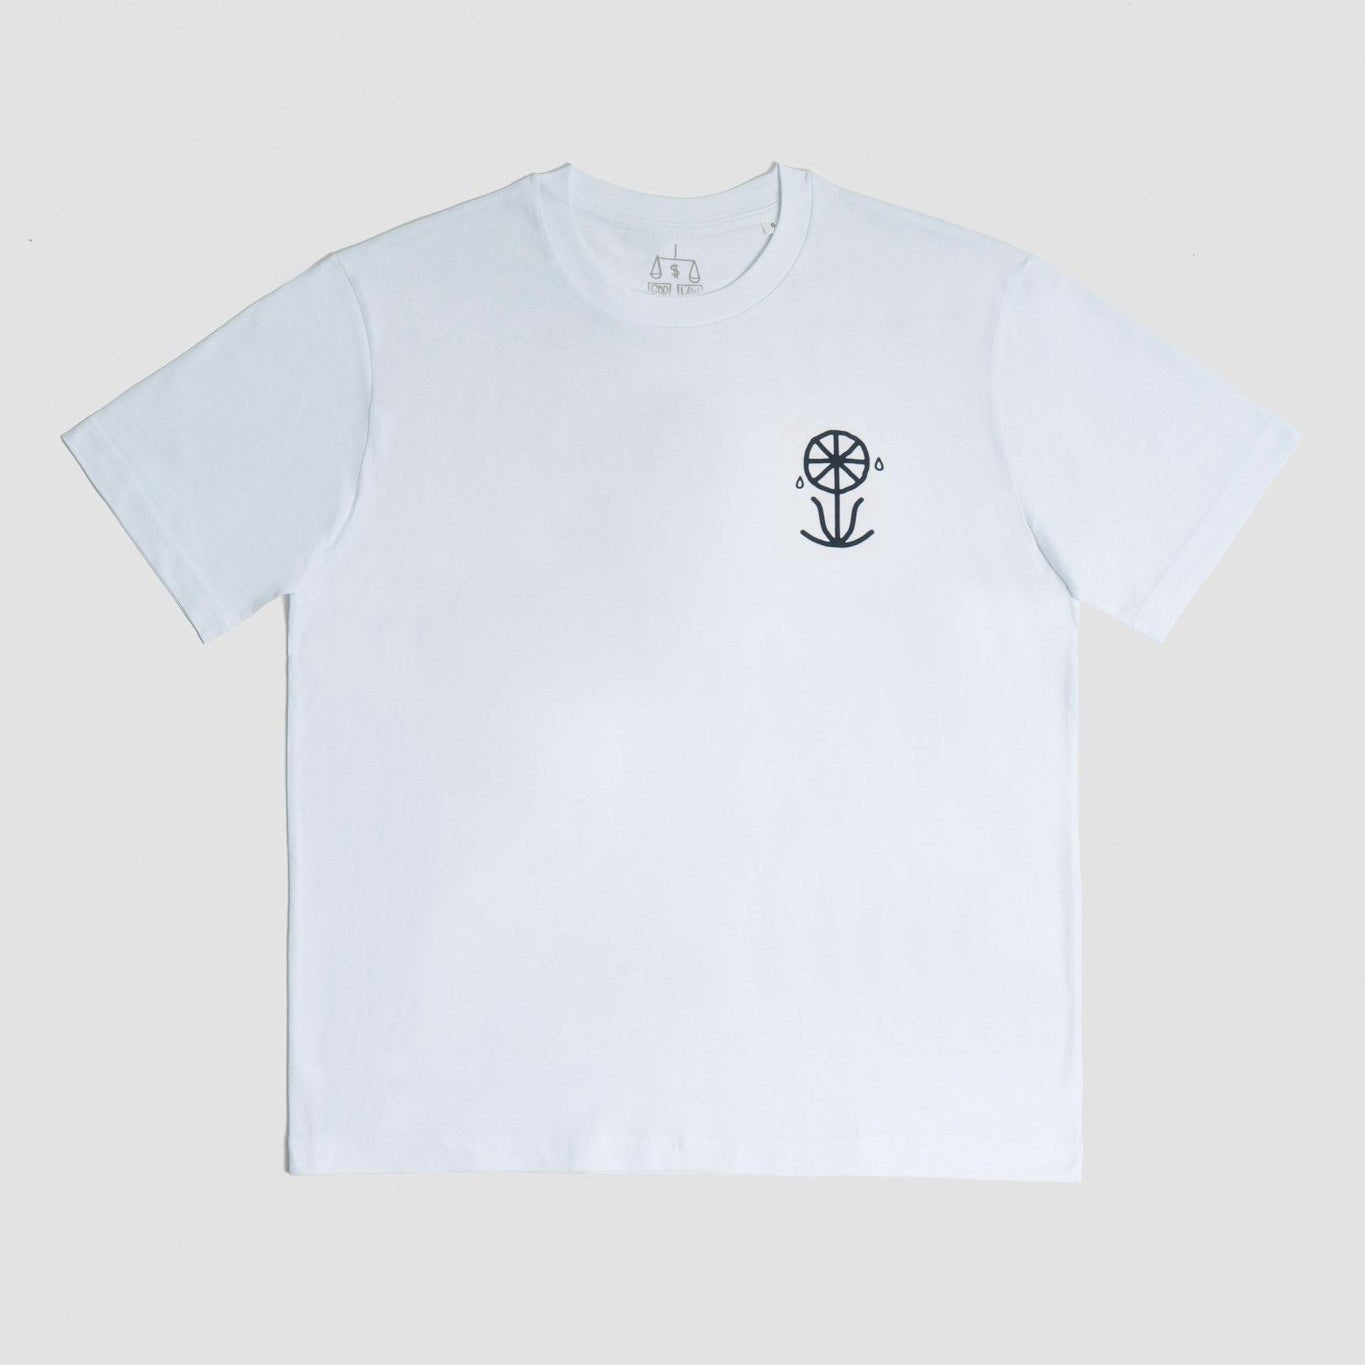 Pepe:Vizio, Camiseta Cosas Bonitas Logo espalda